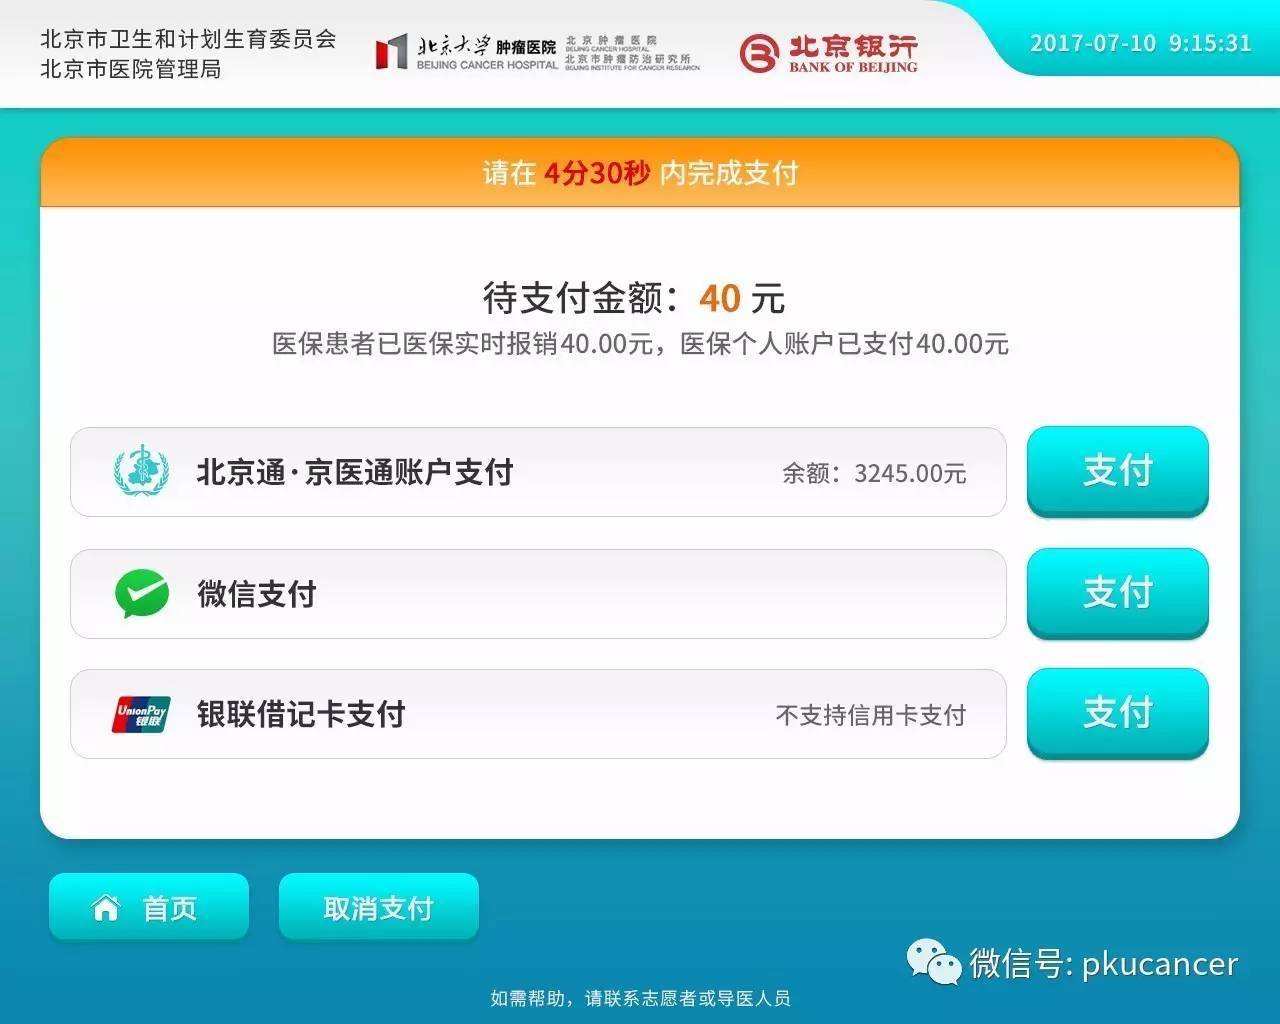 北京大学肿瘤医院网上代挂专家号，在线客服为您解答的简单介绍